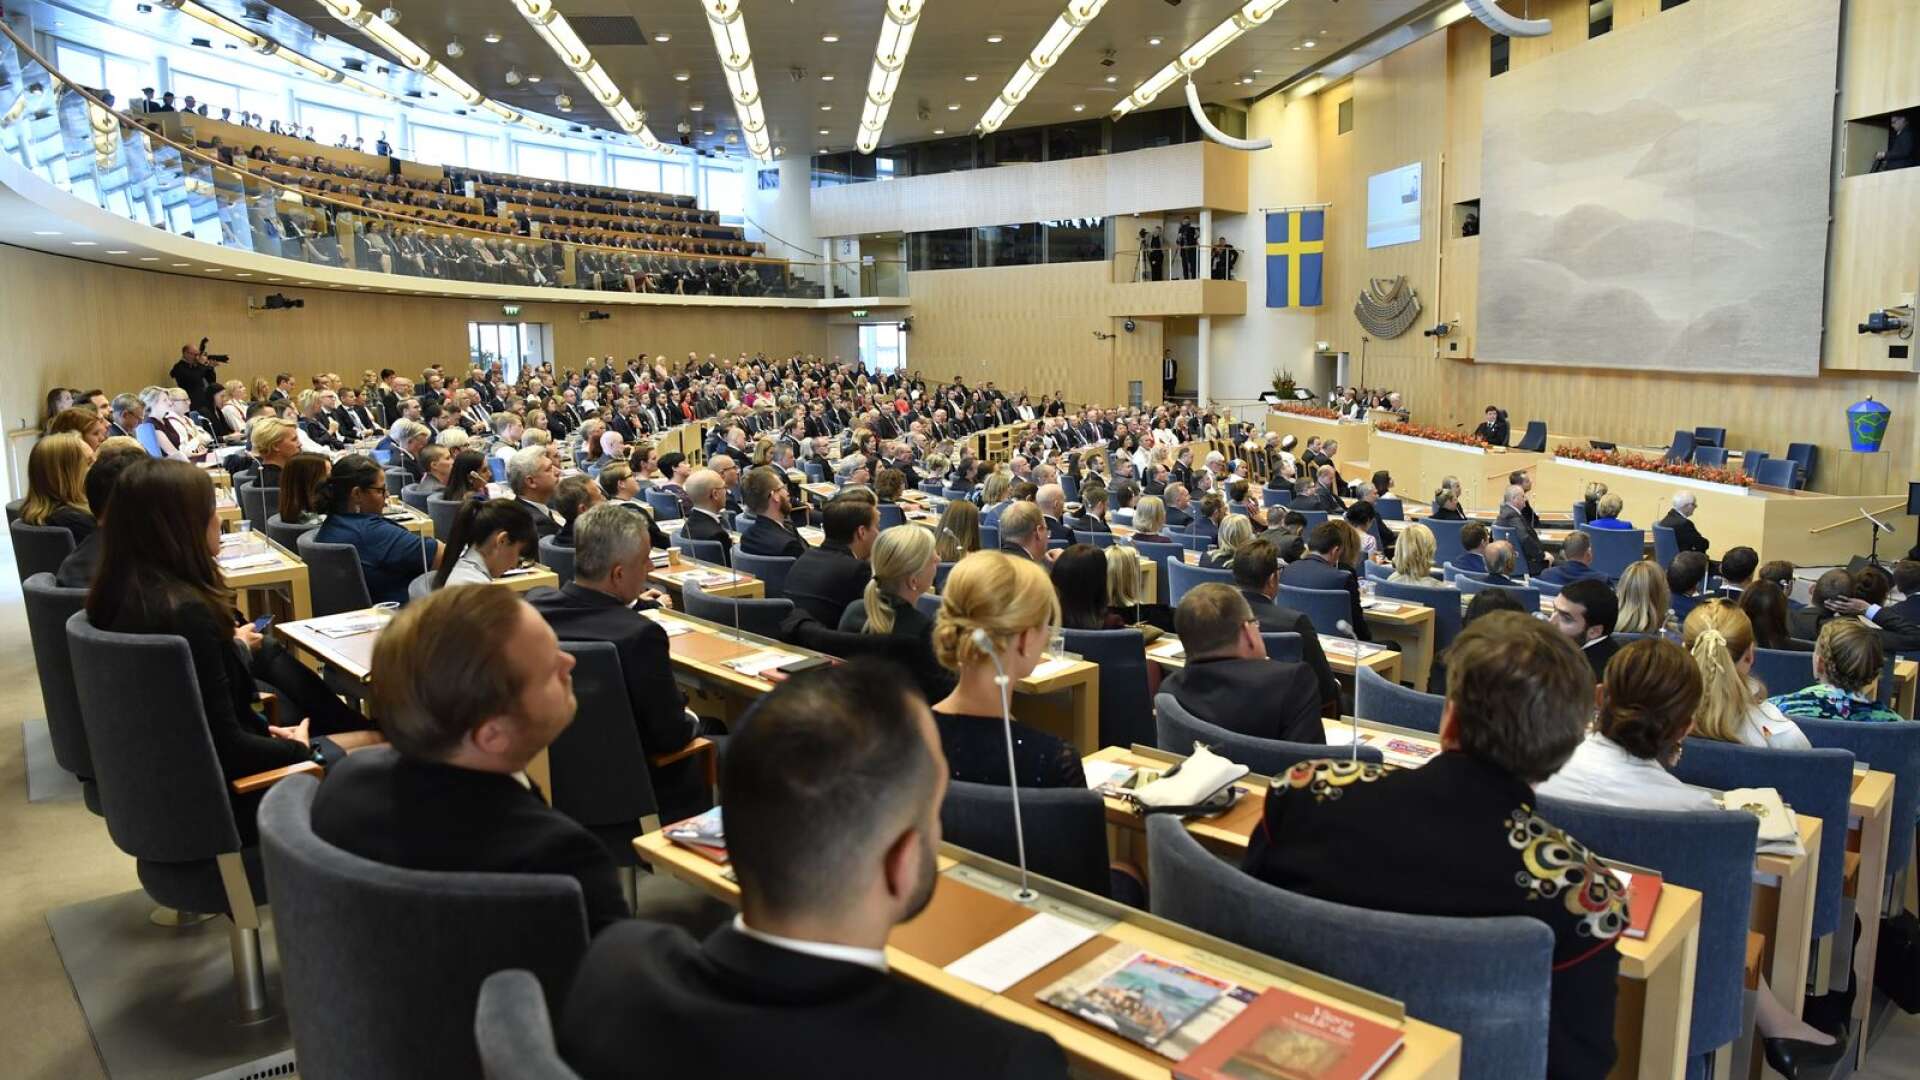 Med möjligheten till fritt val den 11 september kan Sverige i år genomföra sitt första riktigt demokratiska val någonsin, skriver Per Andersson.